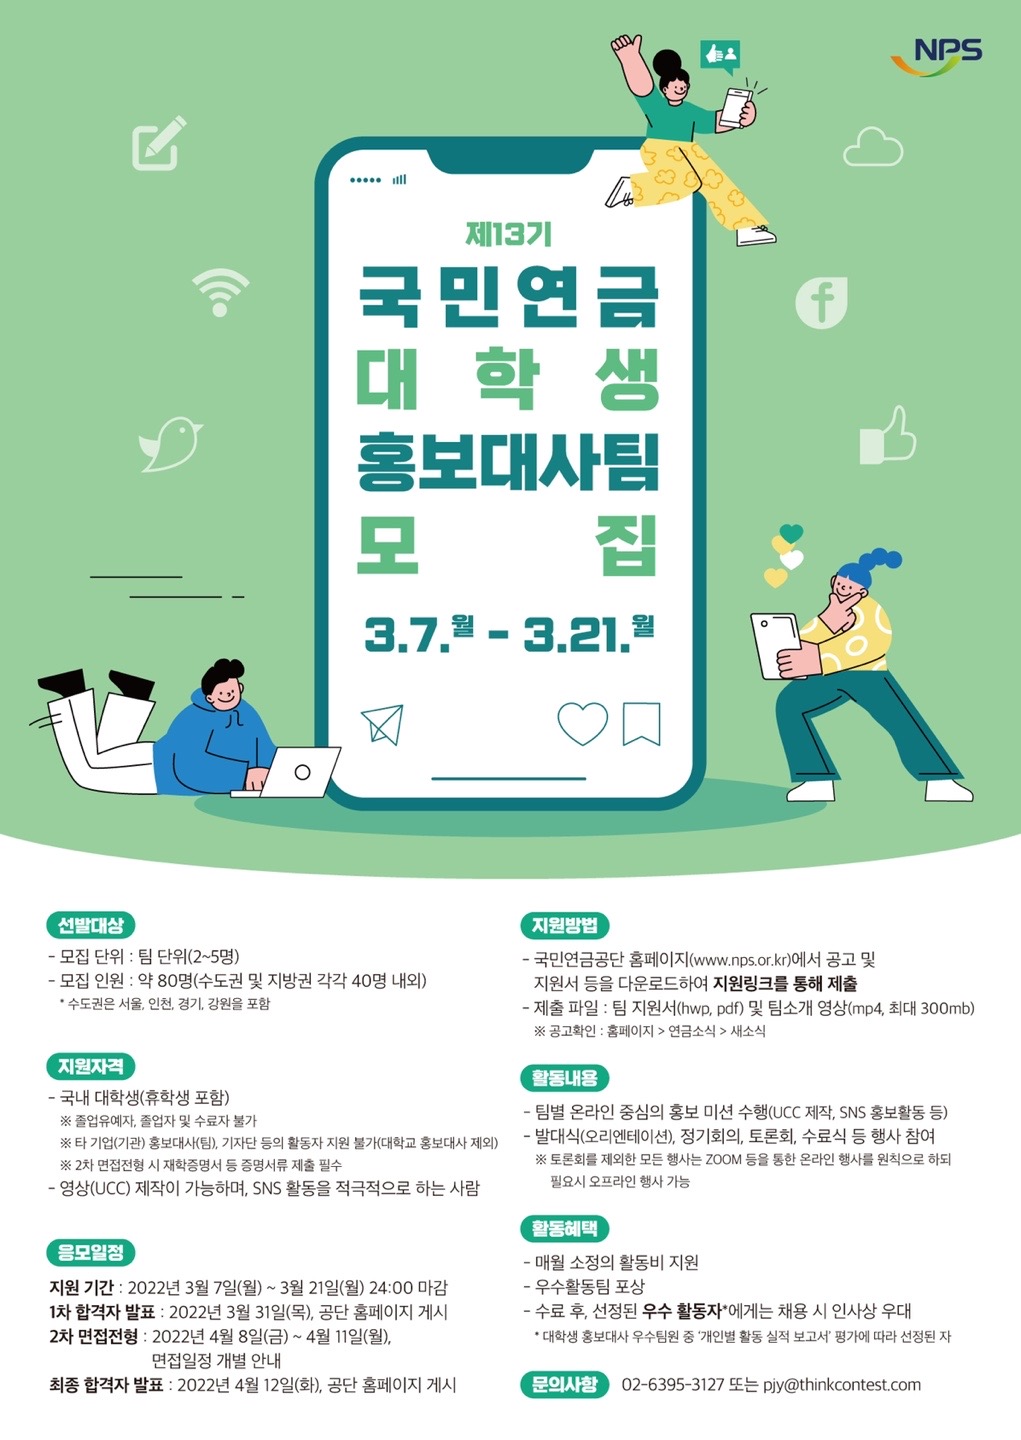 [안내] 국민연금공잔 제13기 대학생 홍보대사팀 선발·운영 안내